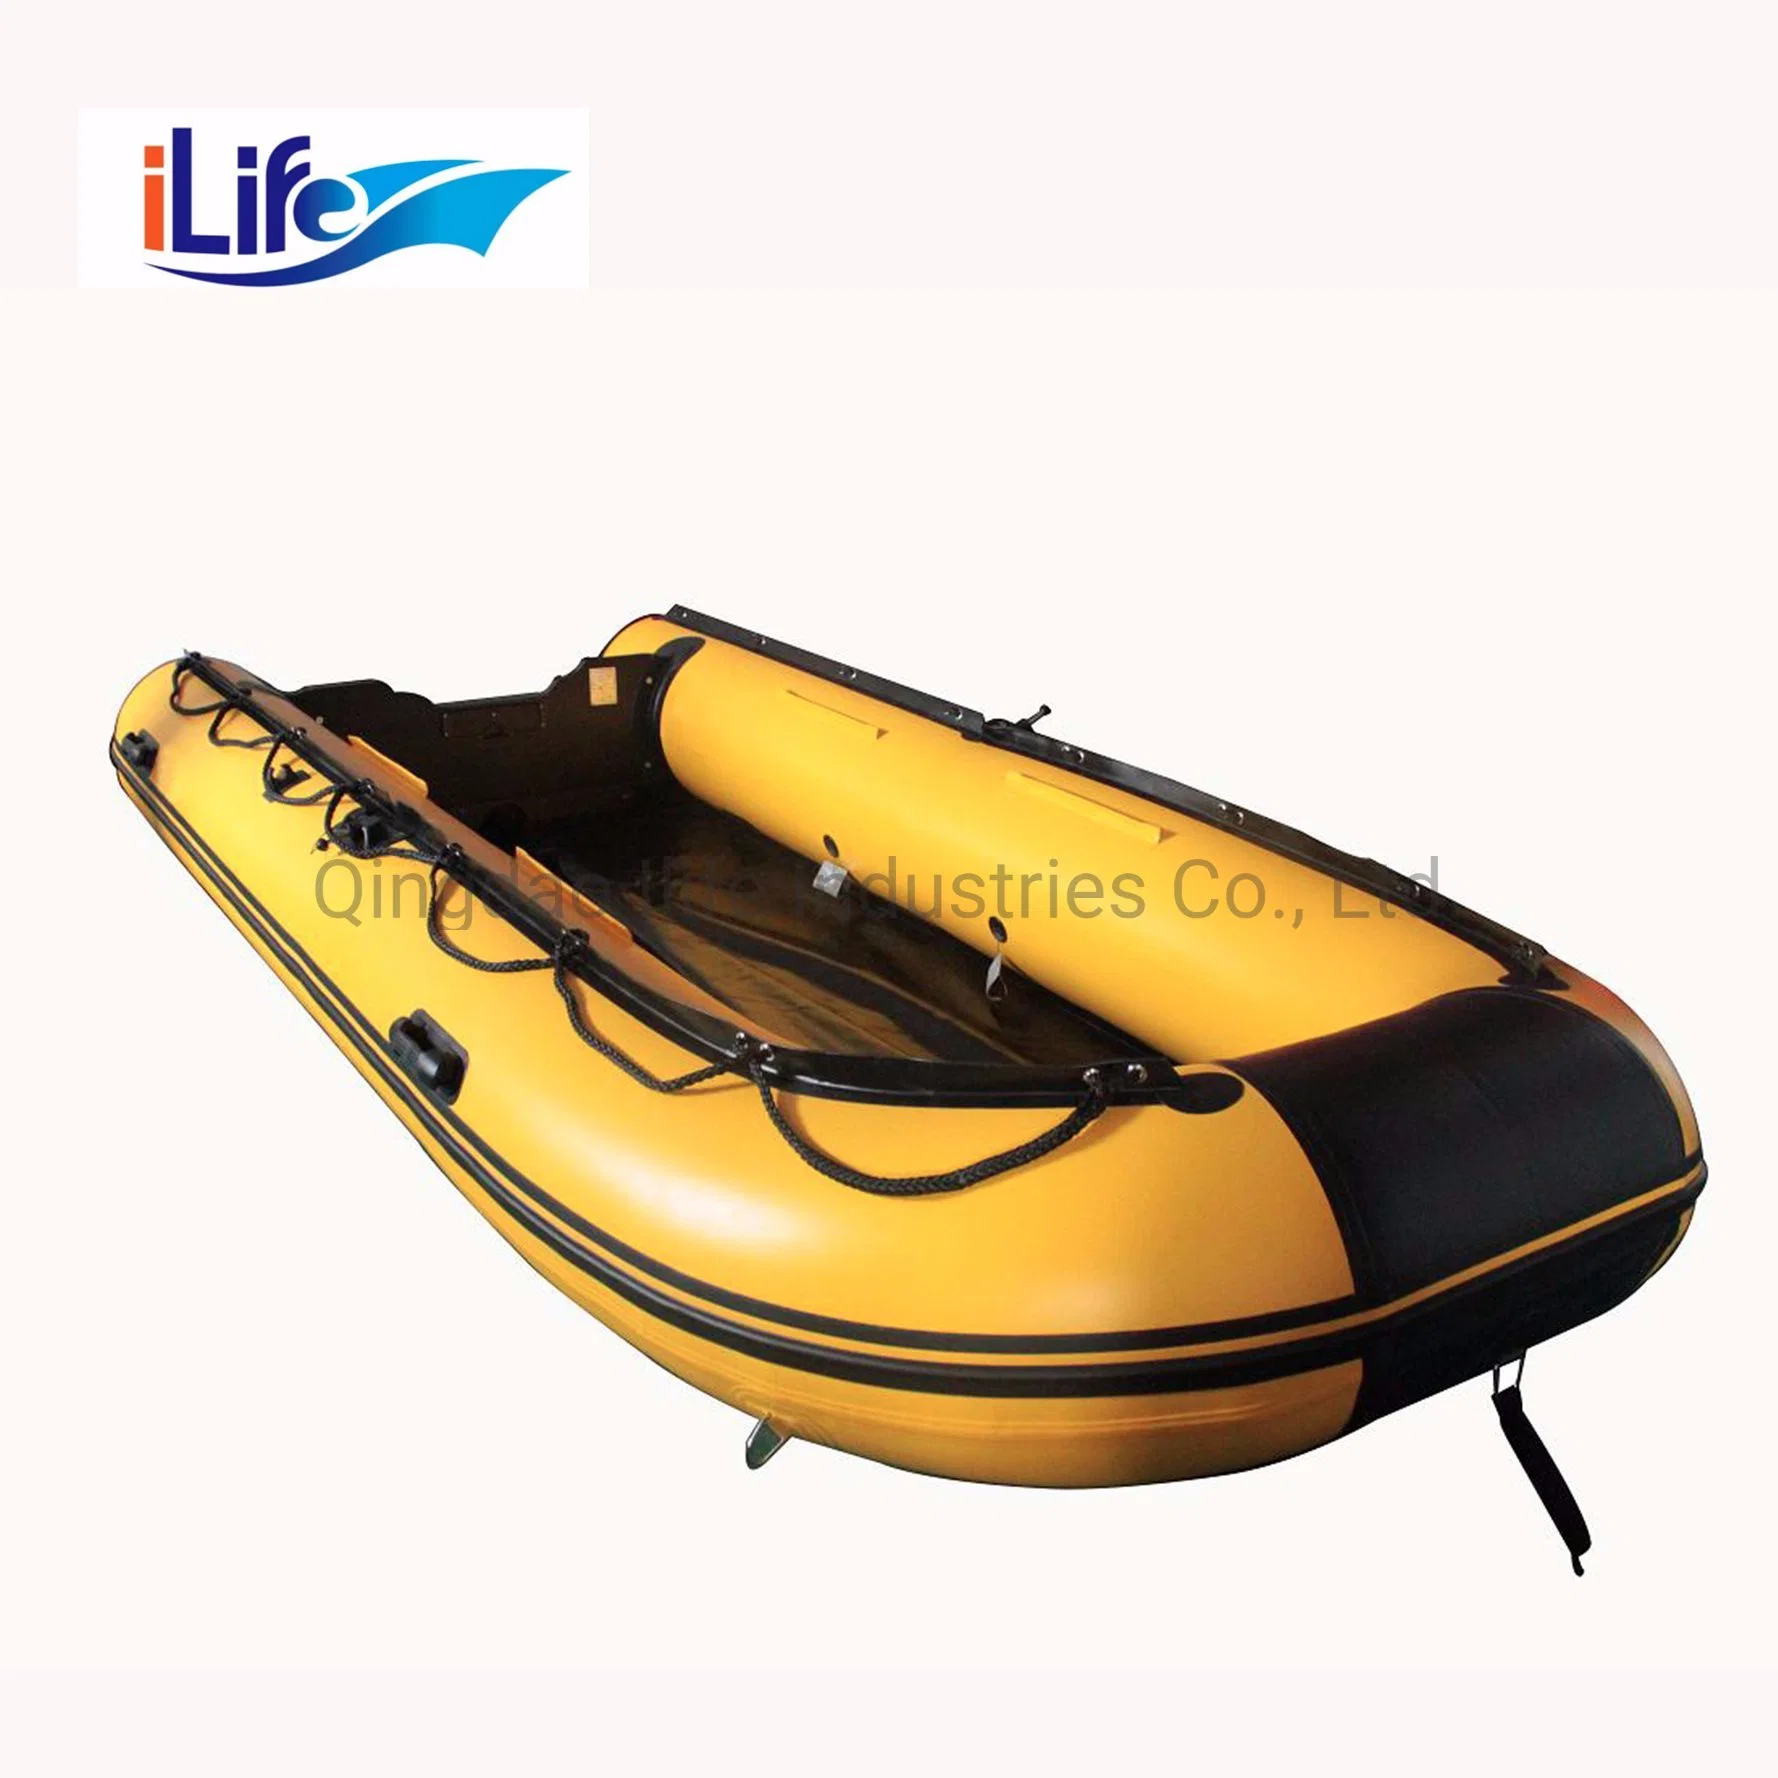 ILife 4.3m jaune Offshore PVC/Hypalon bateau de sauvetage en caoutchouc de pêche Avec aluminium/point de chute Air/plancher de contreplaqué pour le sauvetage